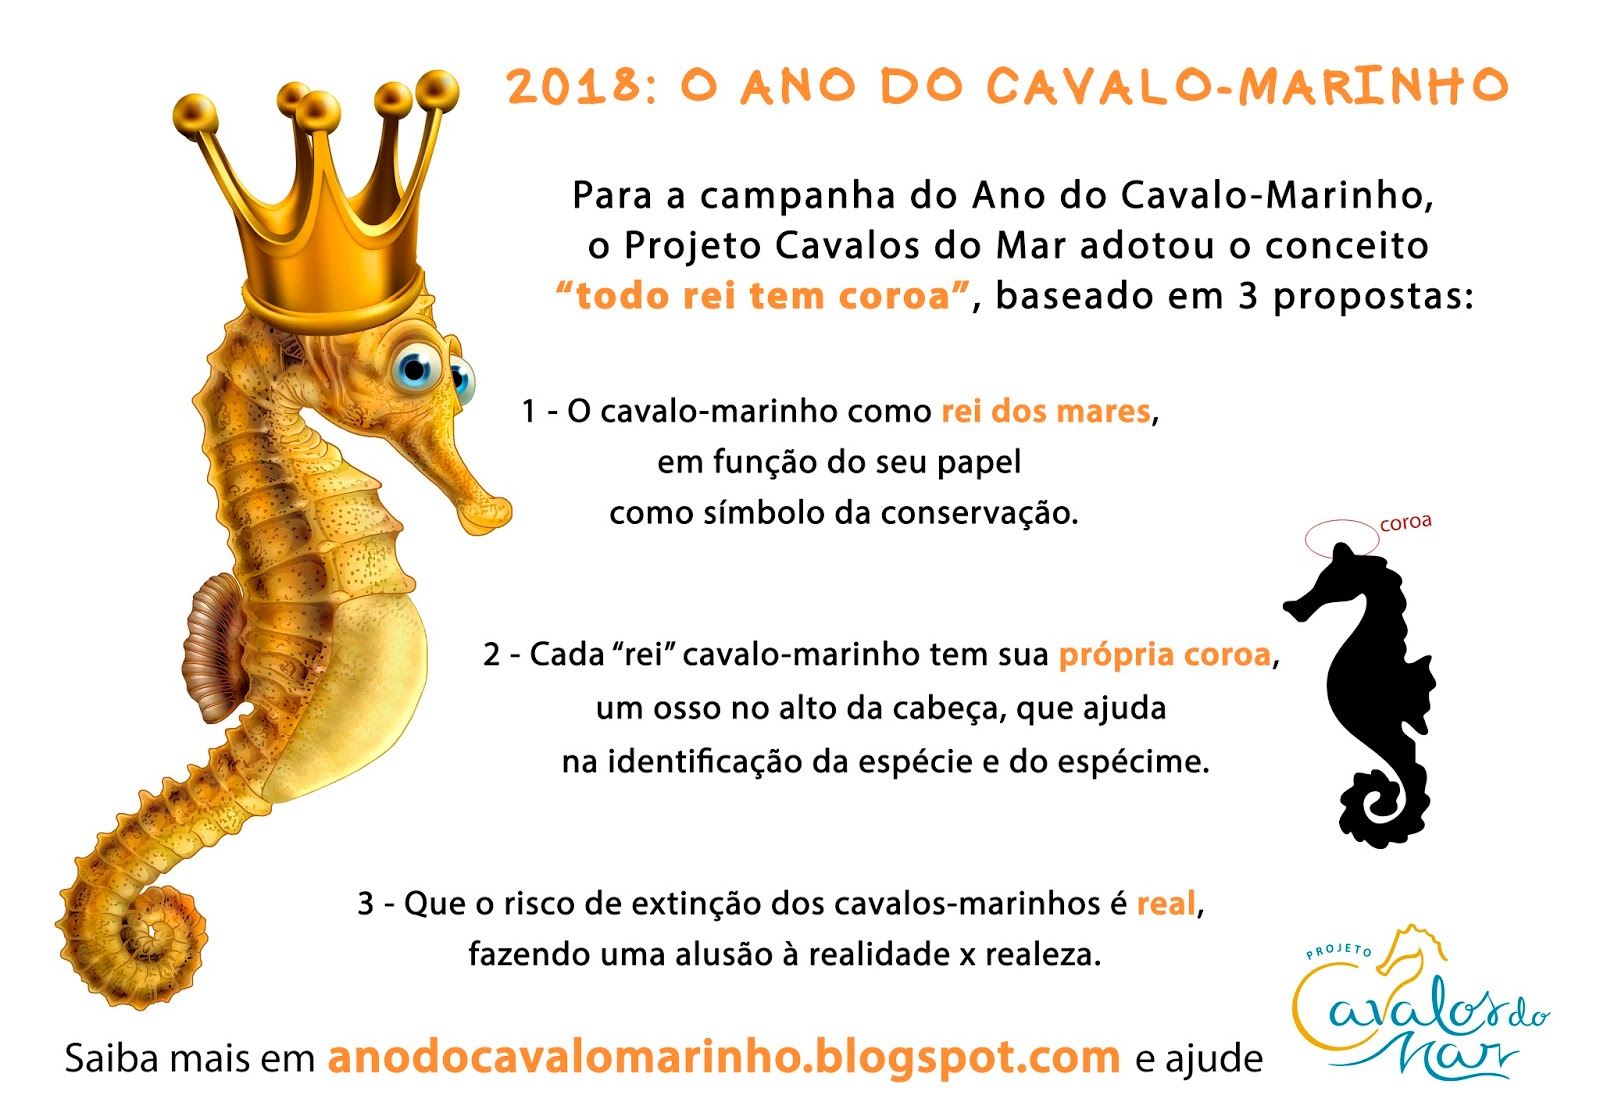 Projeto Cavalos-Marinhos do Rio de Janeiro